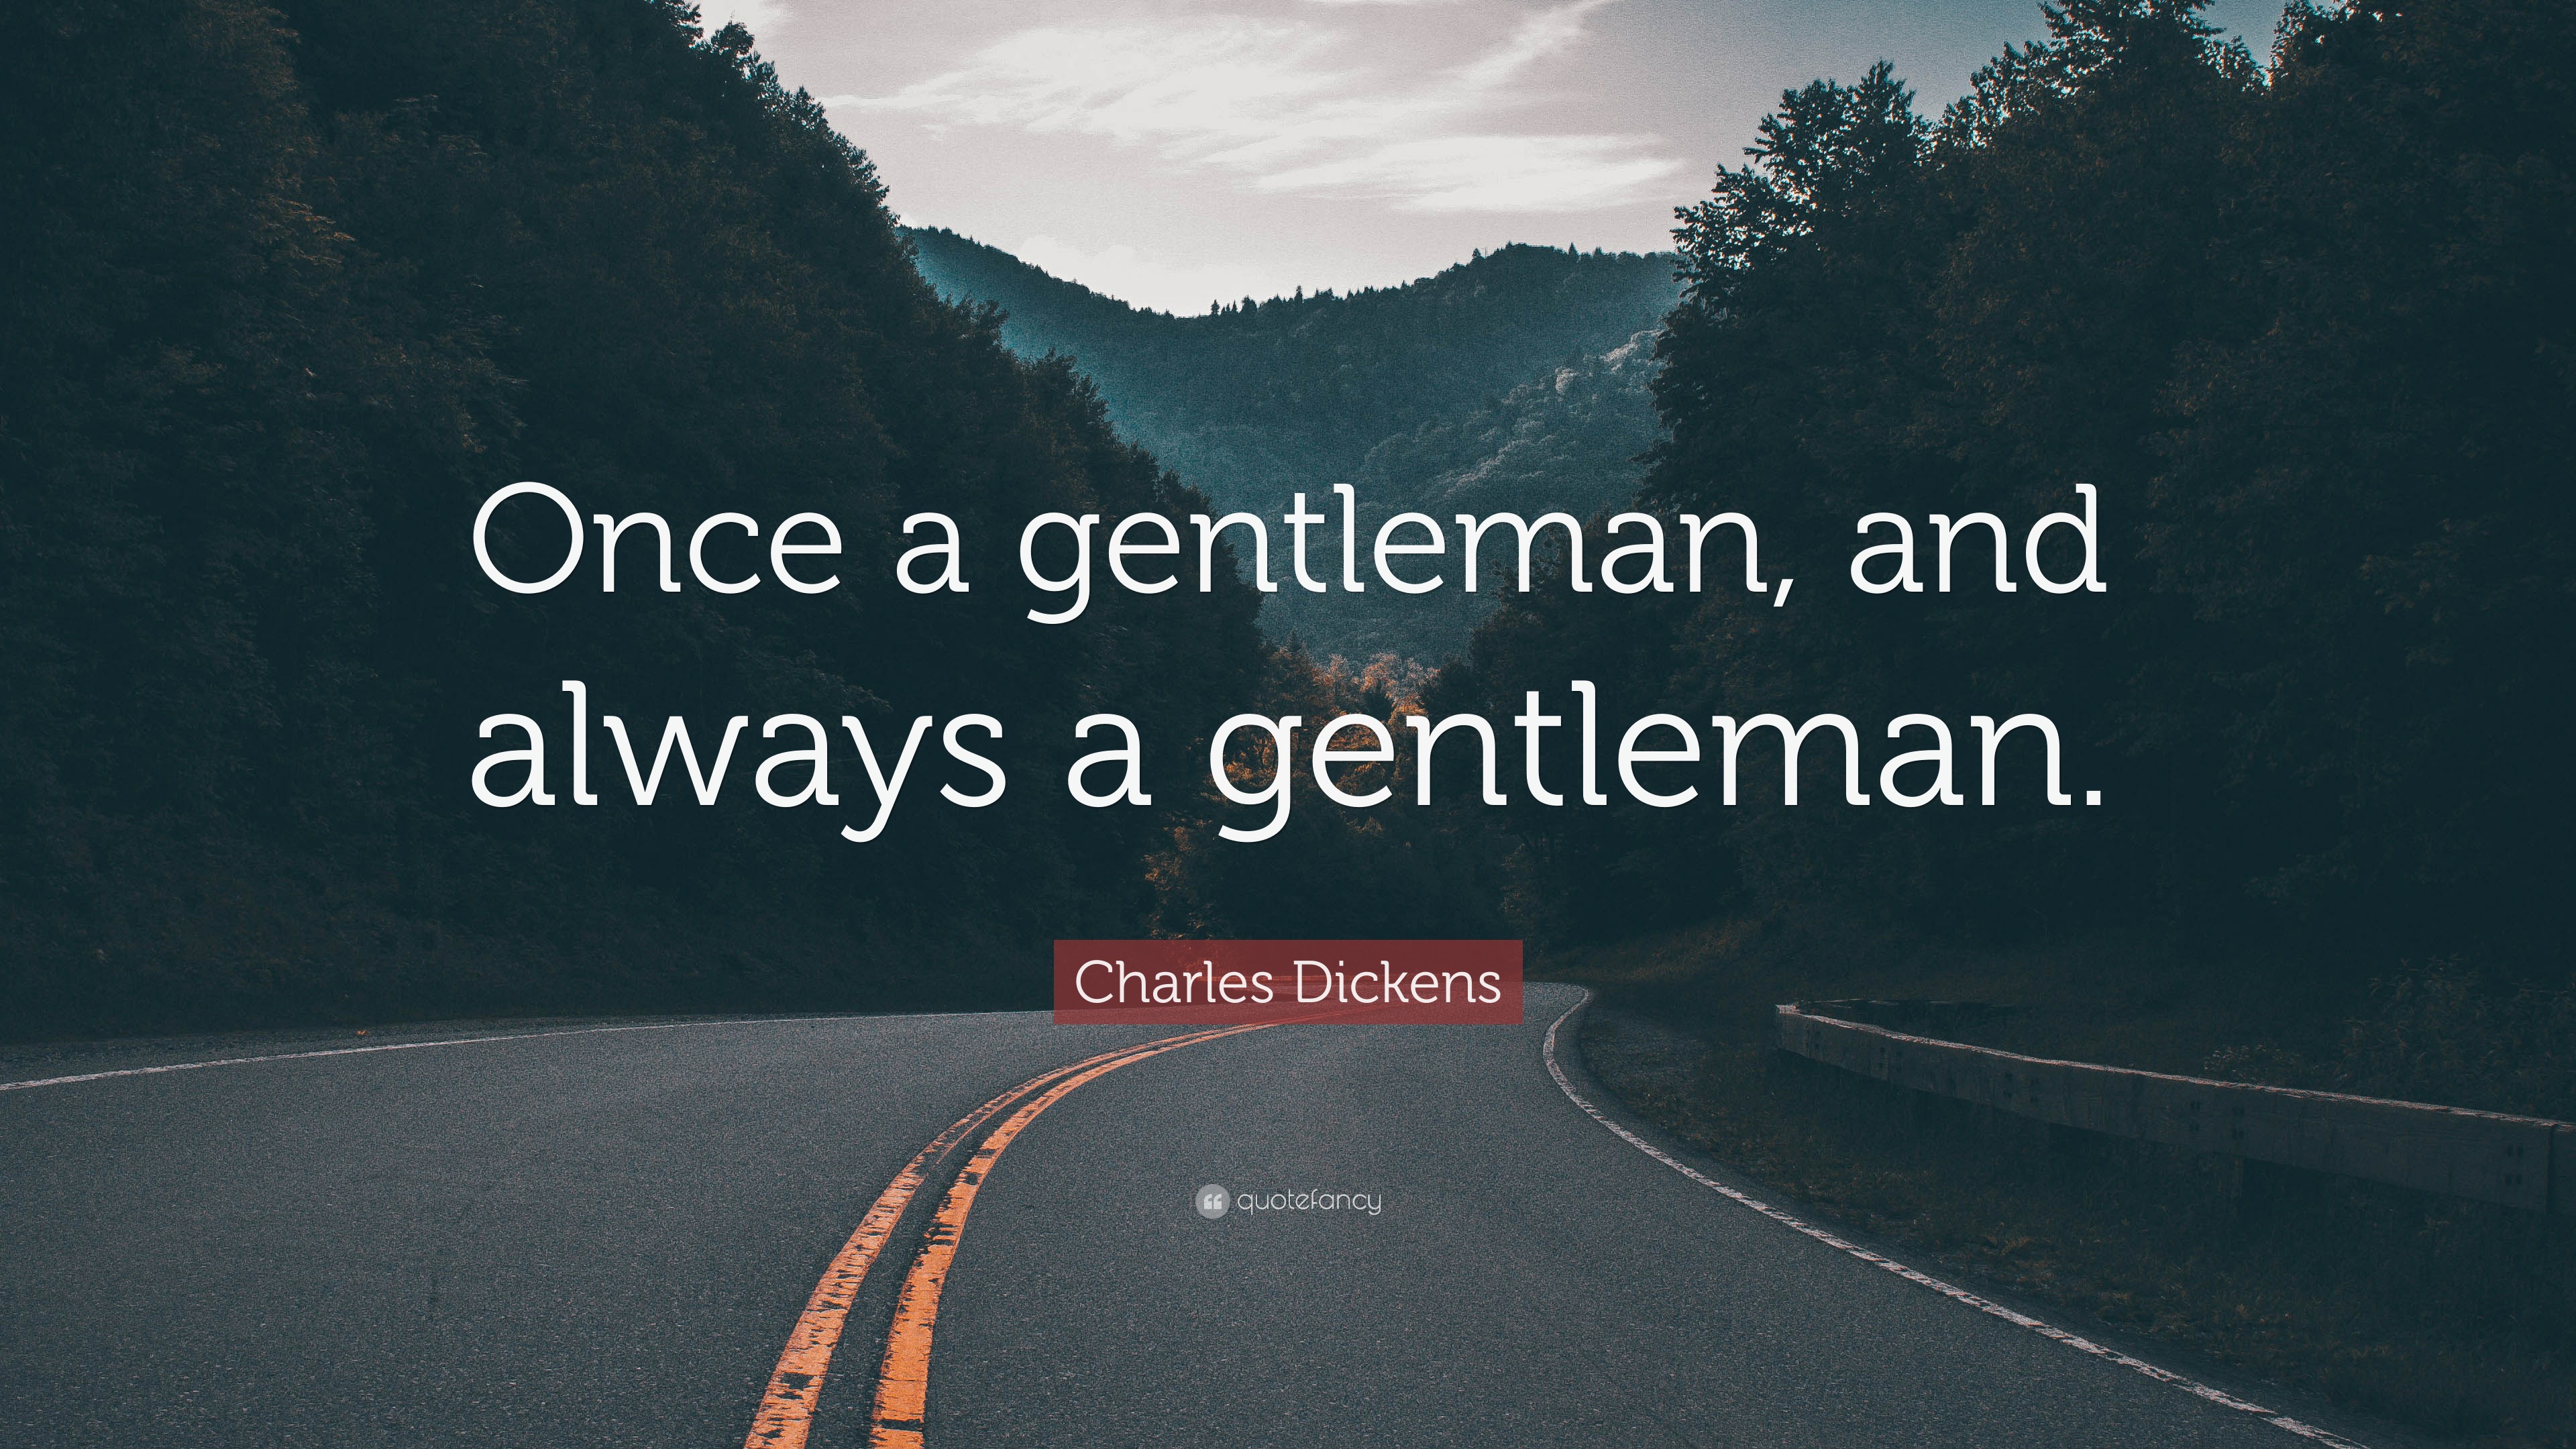 gentleman quote wallpaper